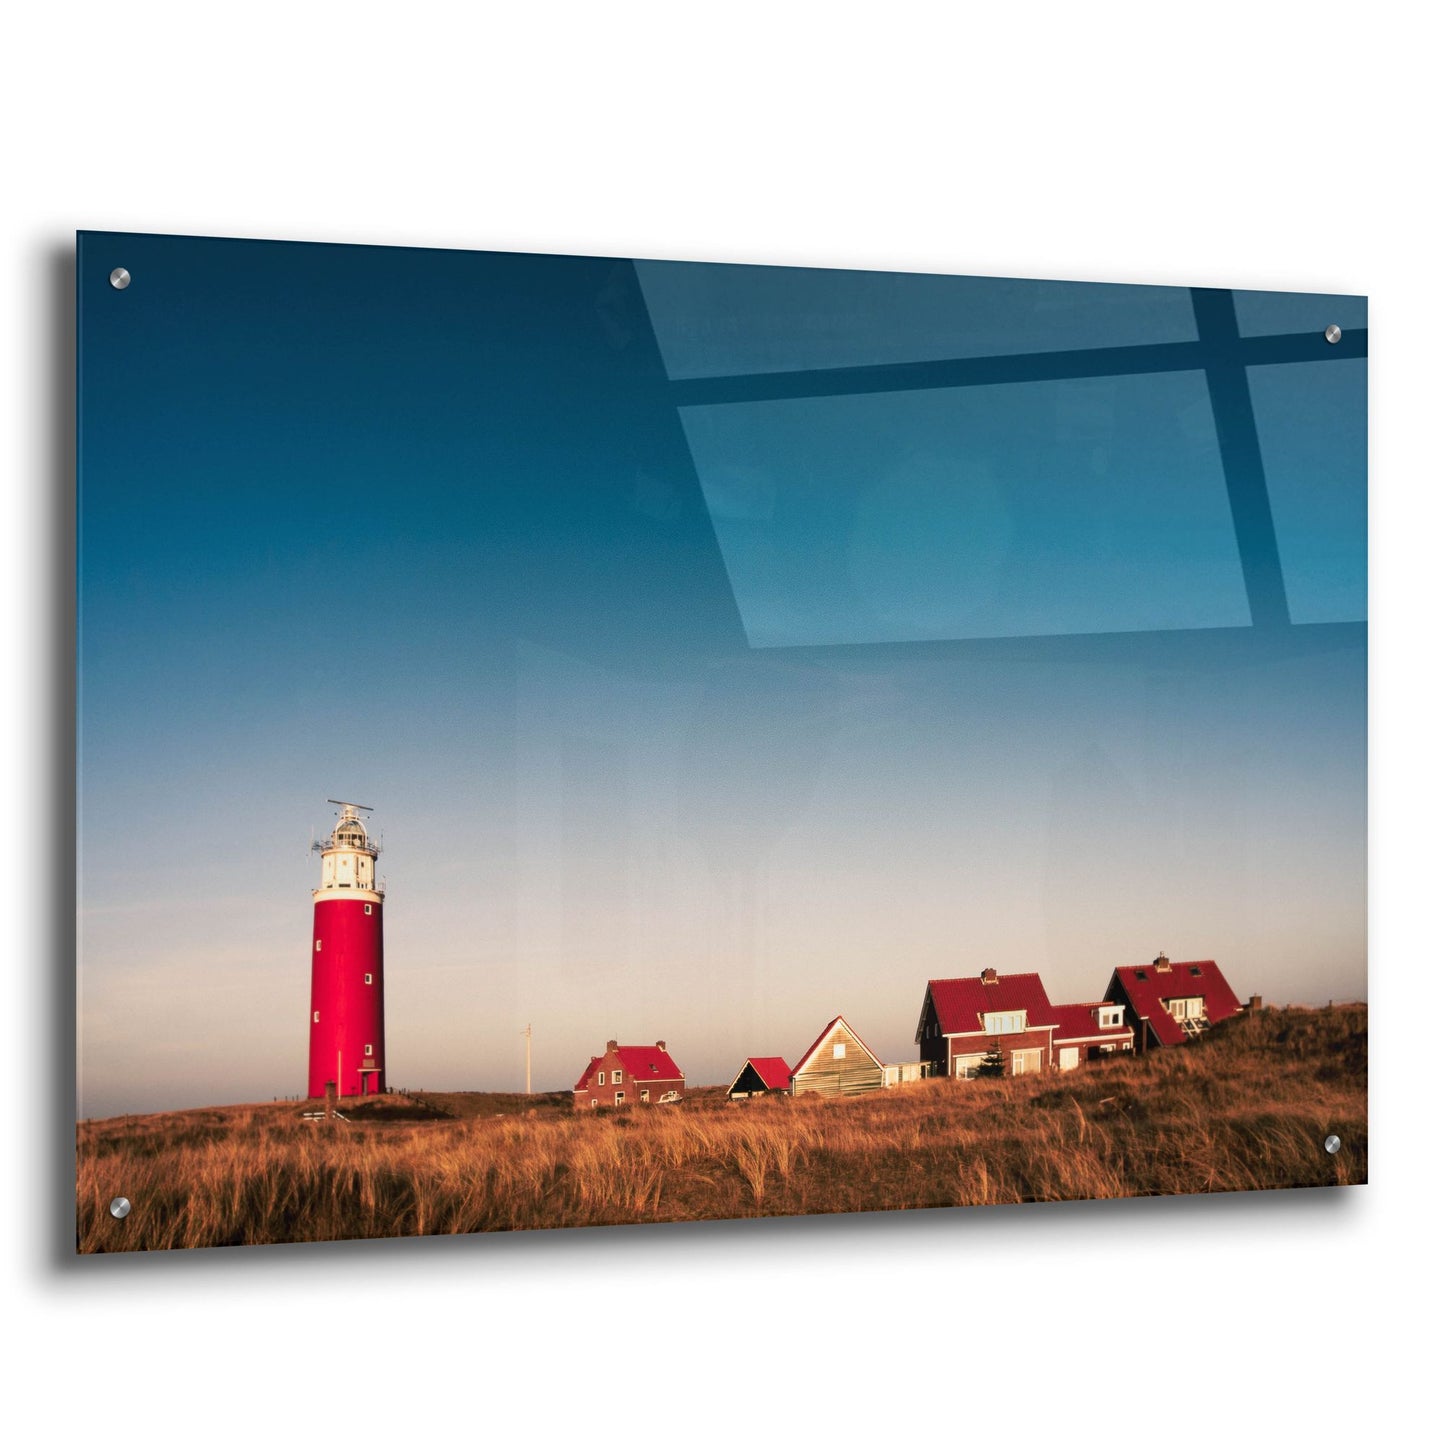 Epic Art 'Texel Lighthouse' by Istvan Nagy, Acrylic Glass Wall Art,36x24